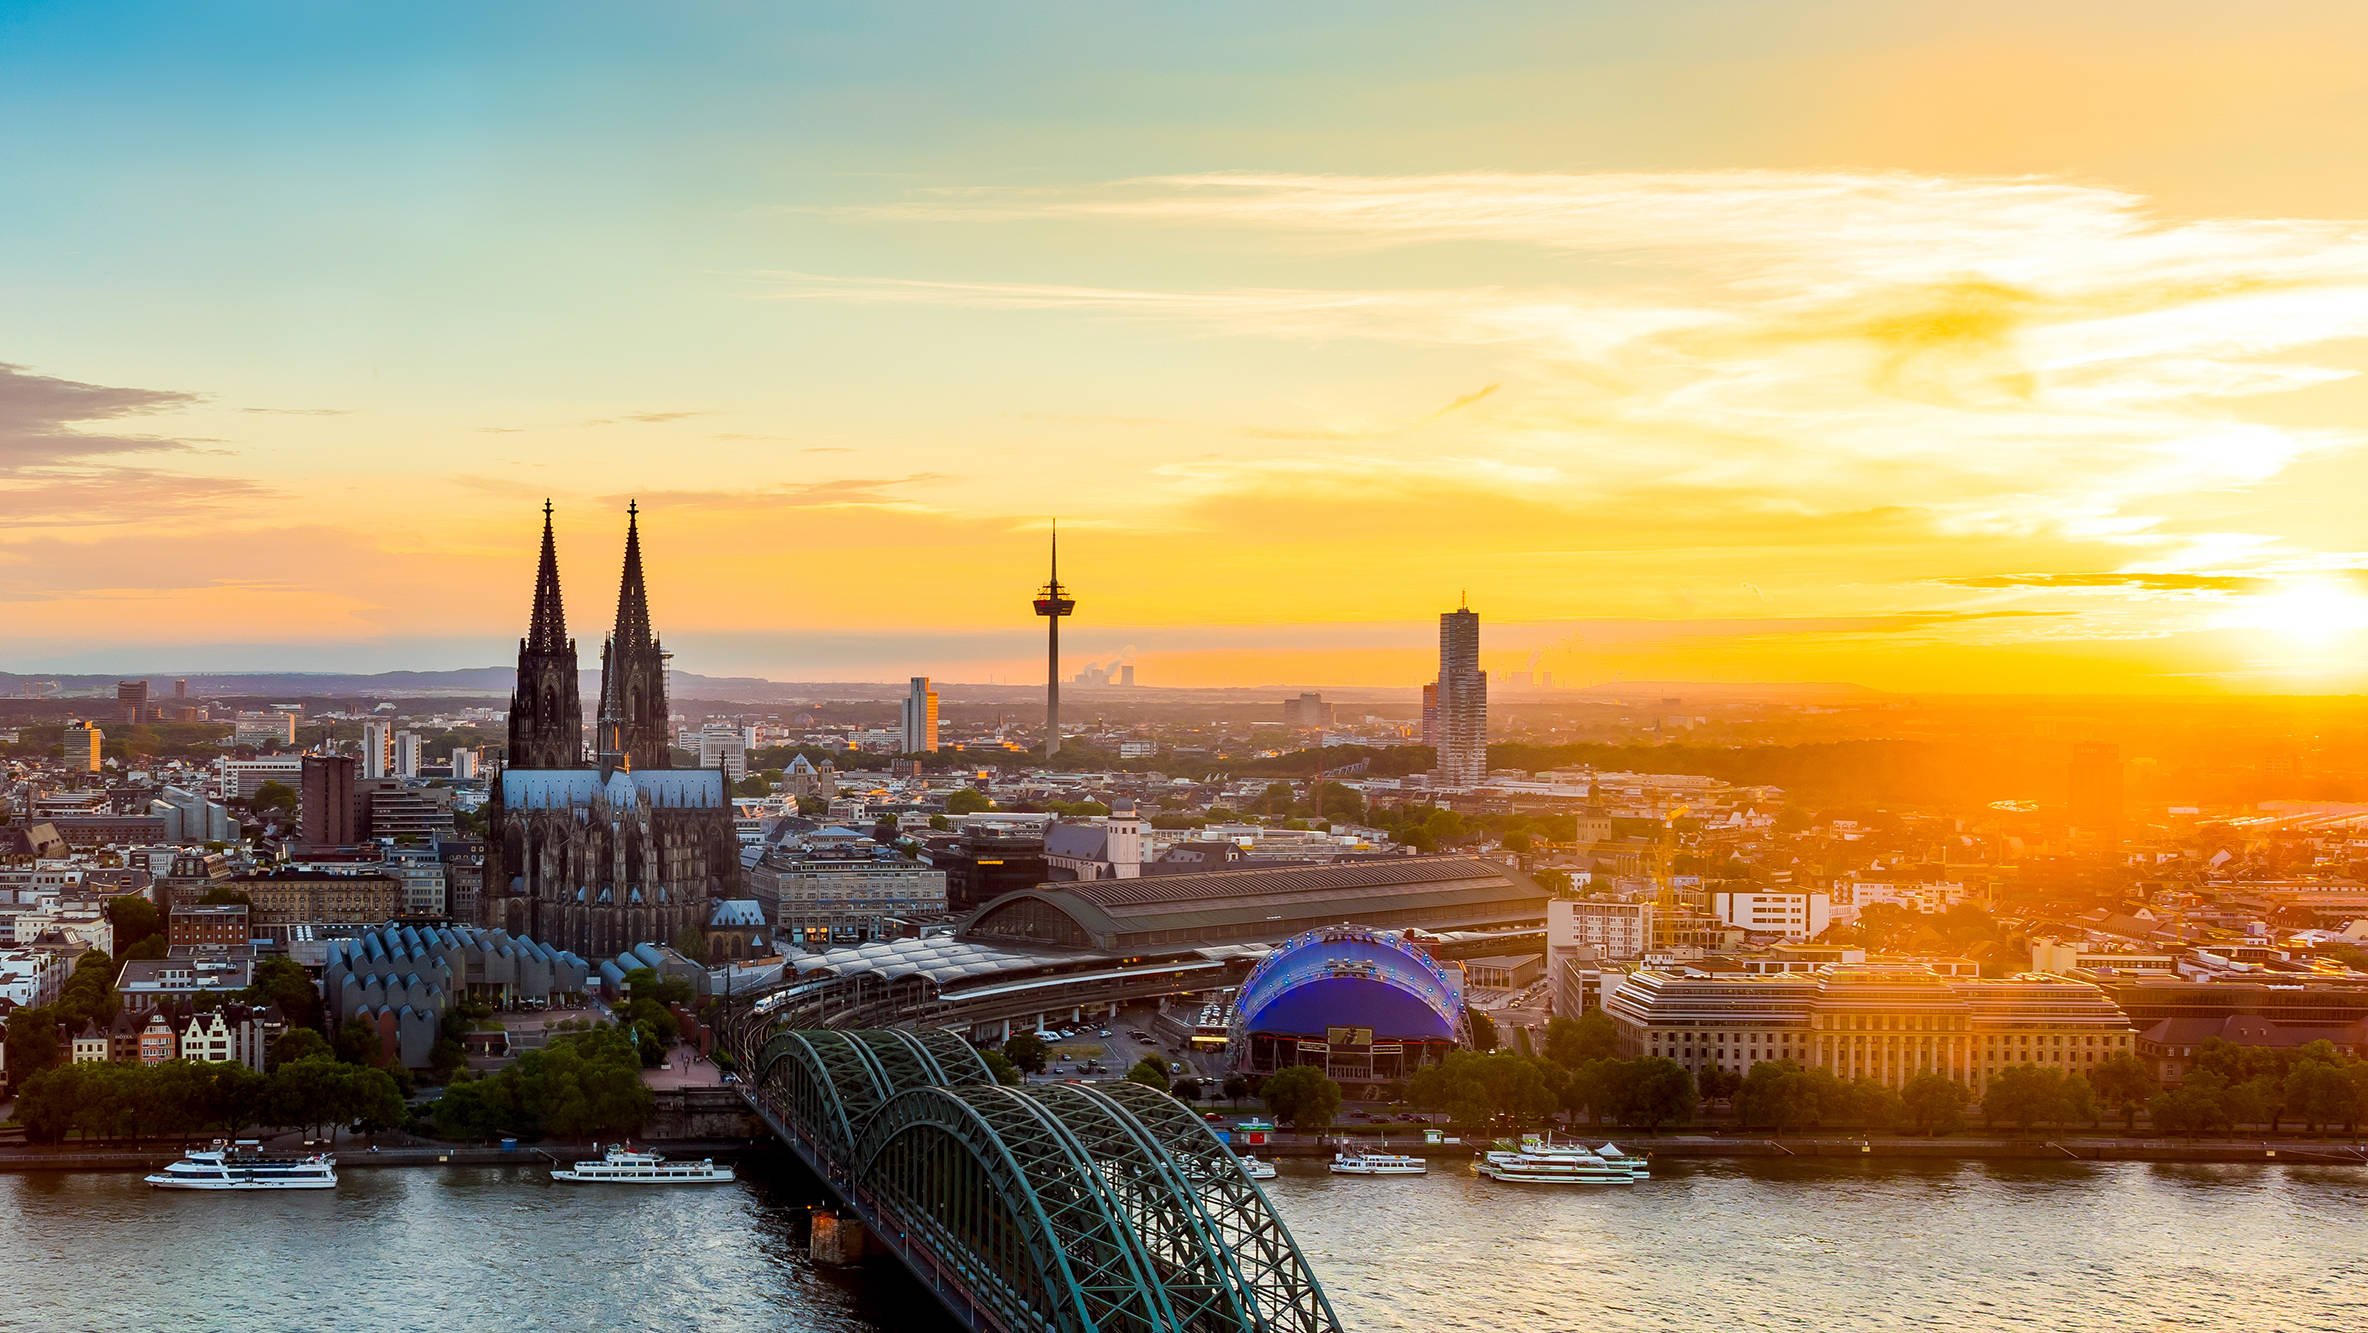 Sehenswürdigkeiten in Köln mit H-Hotels.com entdecken